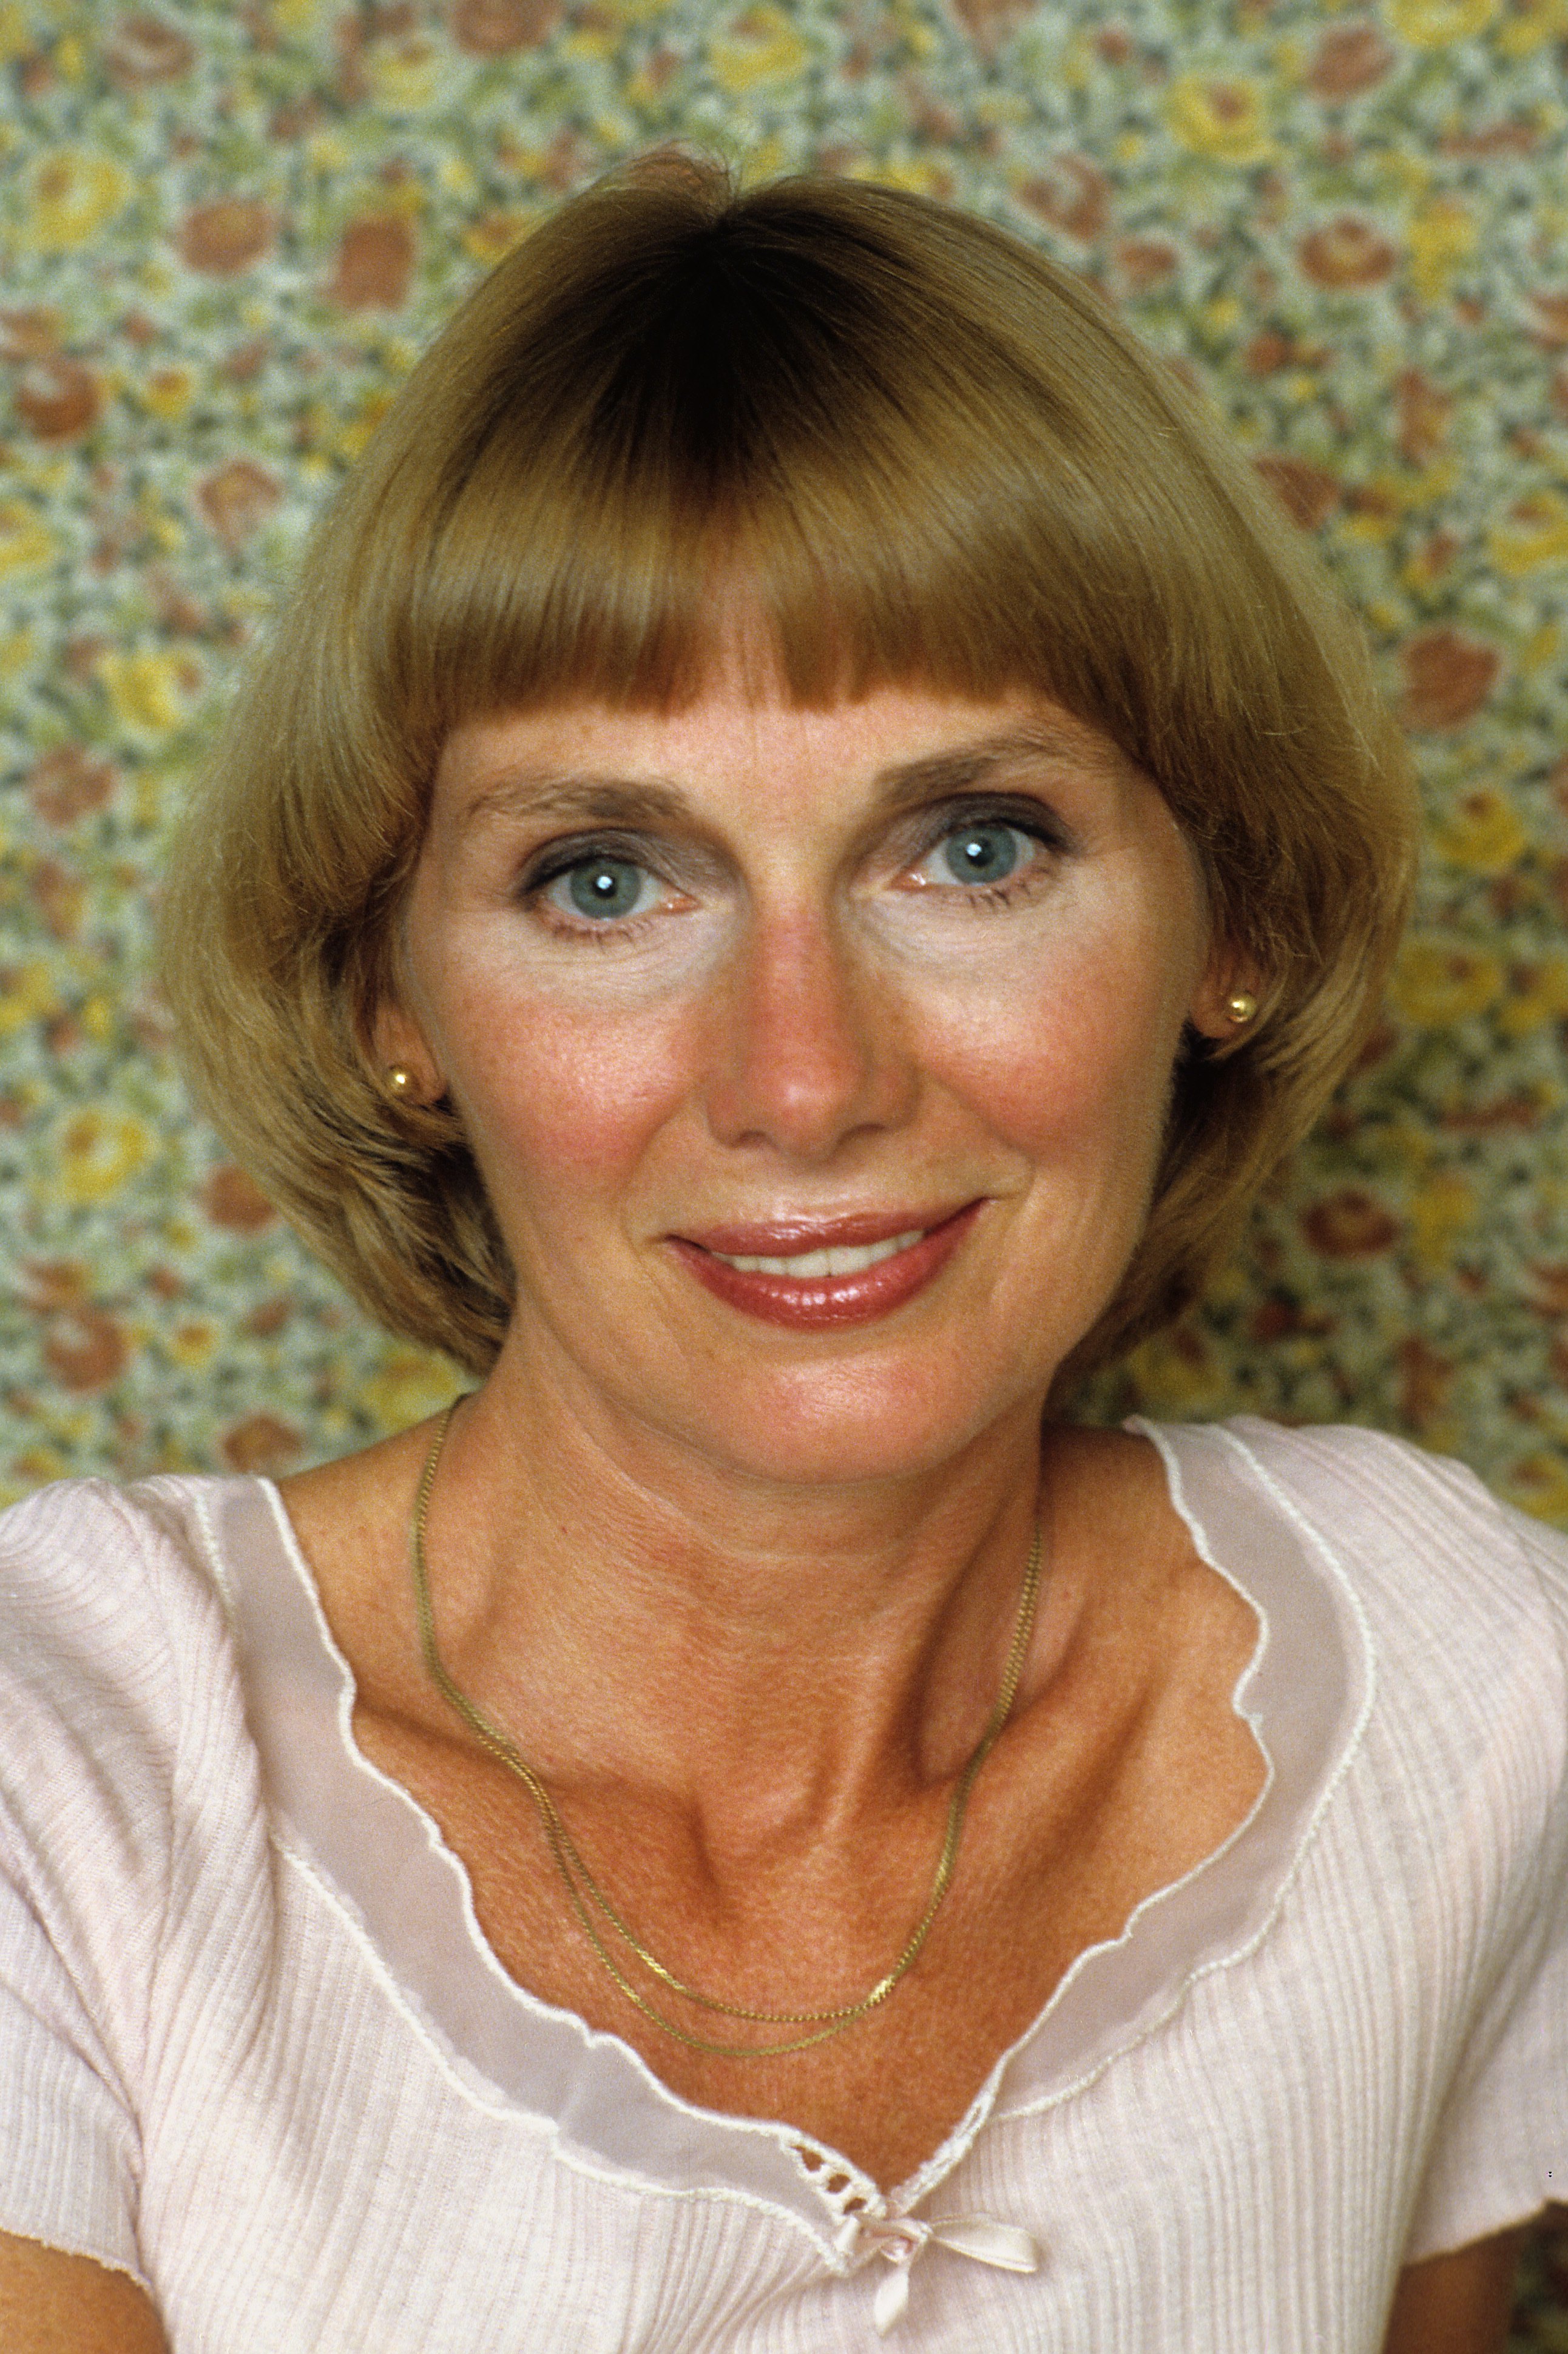 Portrait d'Inga Swenson souriant le 1er janvier 1985 à Los Angeles, Californie. | Source : Getty Images